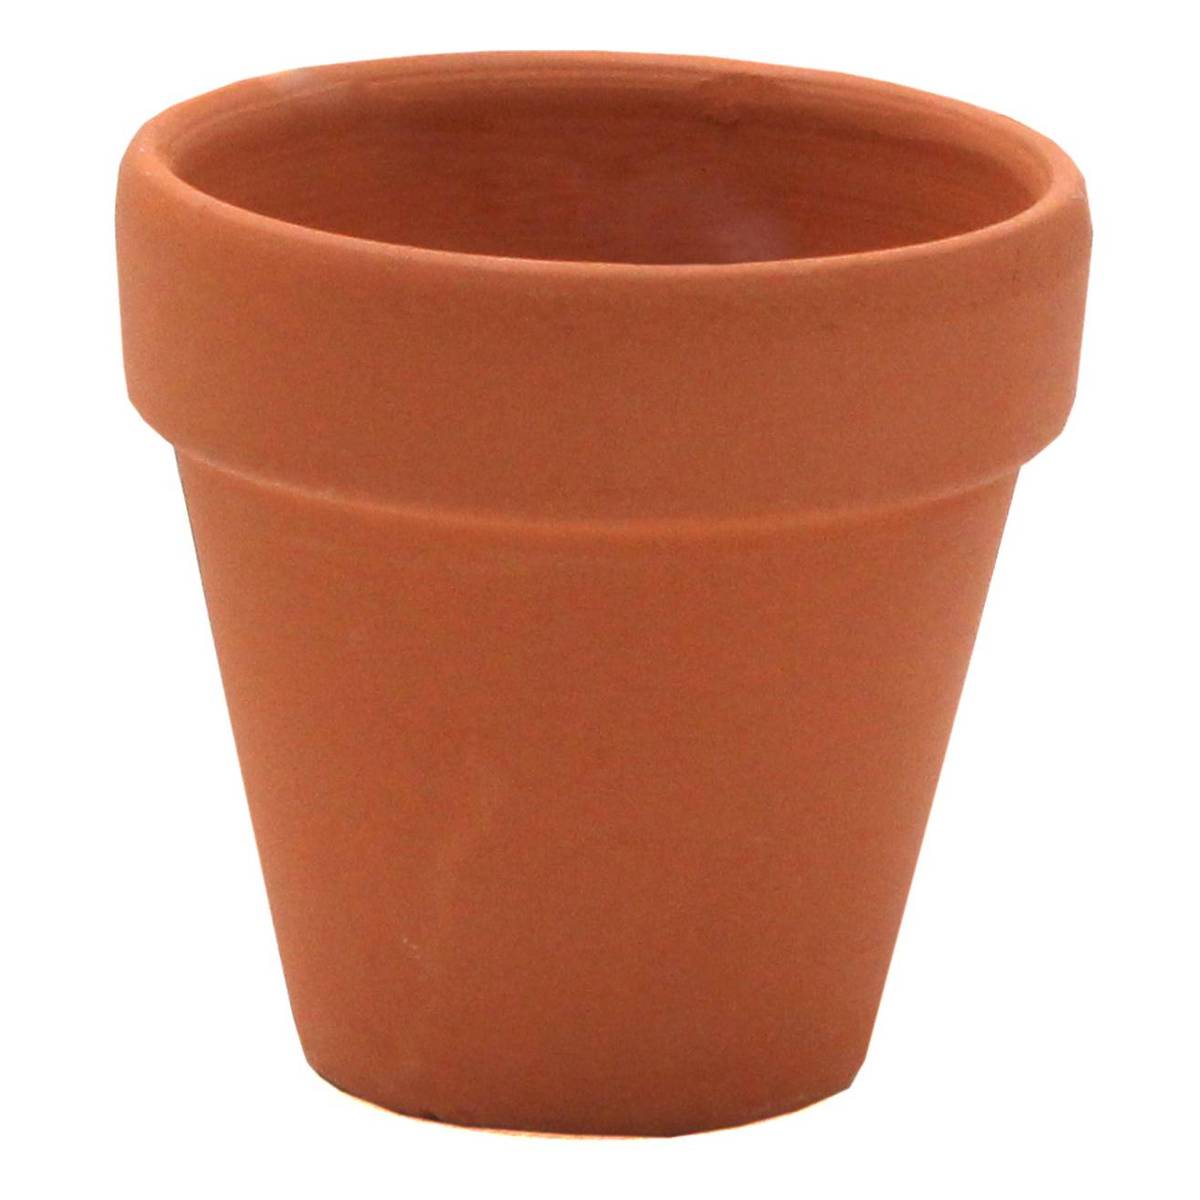 buy terracotta plant pot 5.9cm x 5.7cm for gbp 2.00 | hobbycraft uk